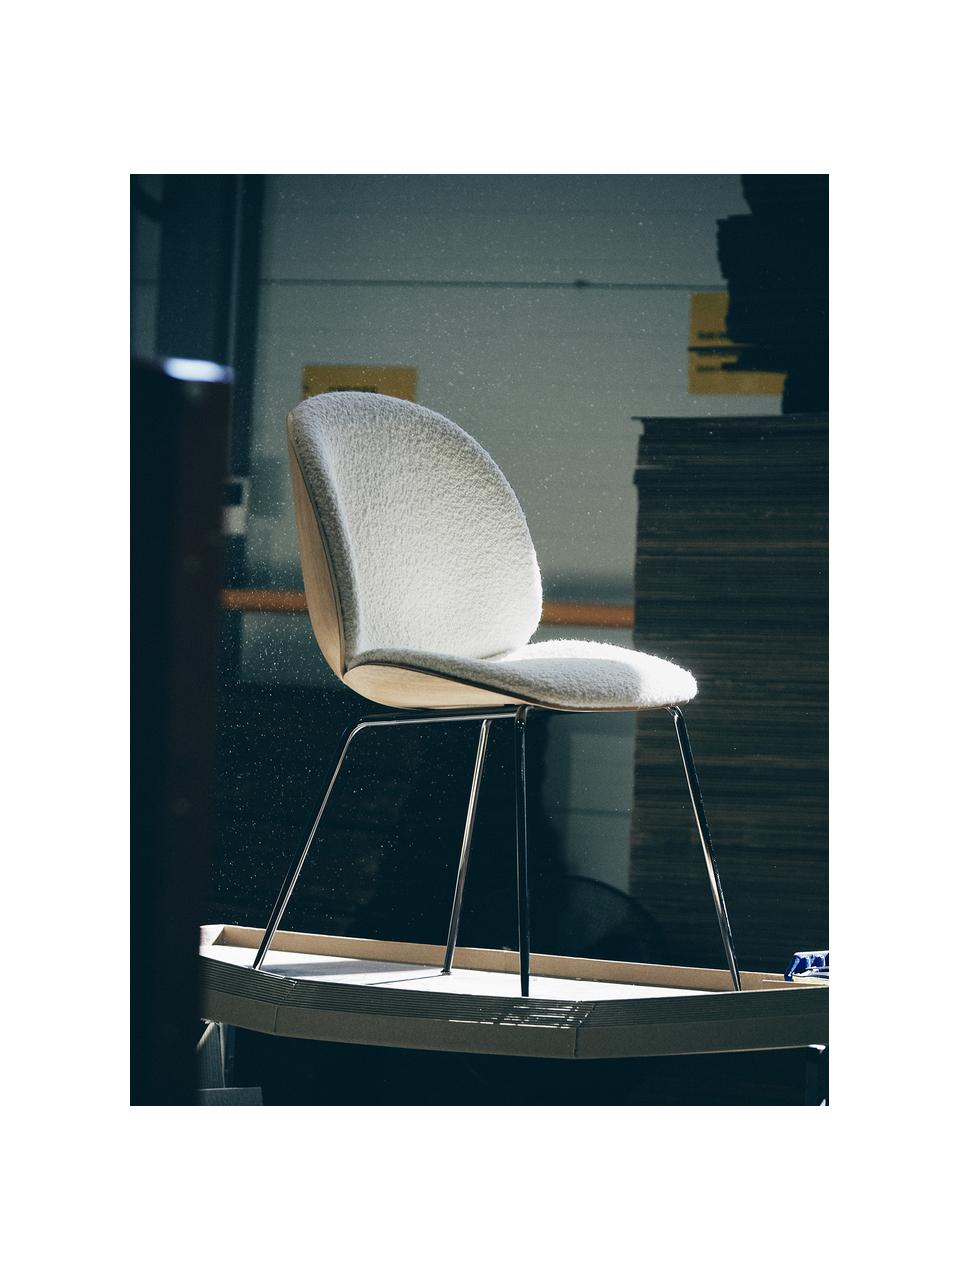 Krzesło tapicerowane Bouclé Beetle, Tapicerka: Bouclé (100% poliester), Nogi: stal powlekana, Bouclé biały, drewno dębowe, czarny błyszczący, S 56 x G 58 cm